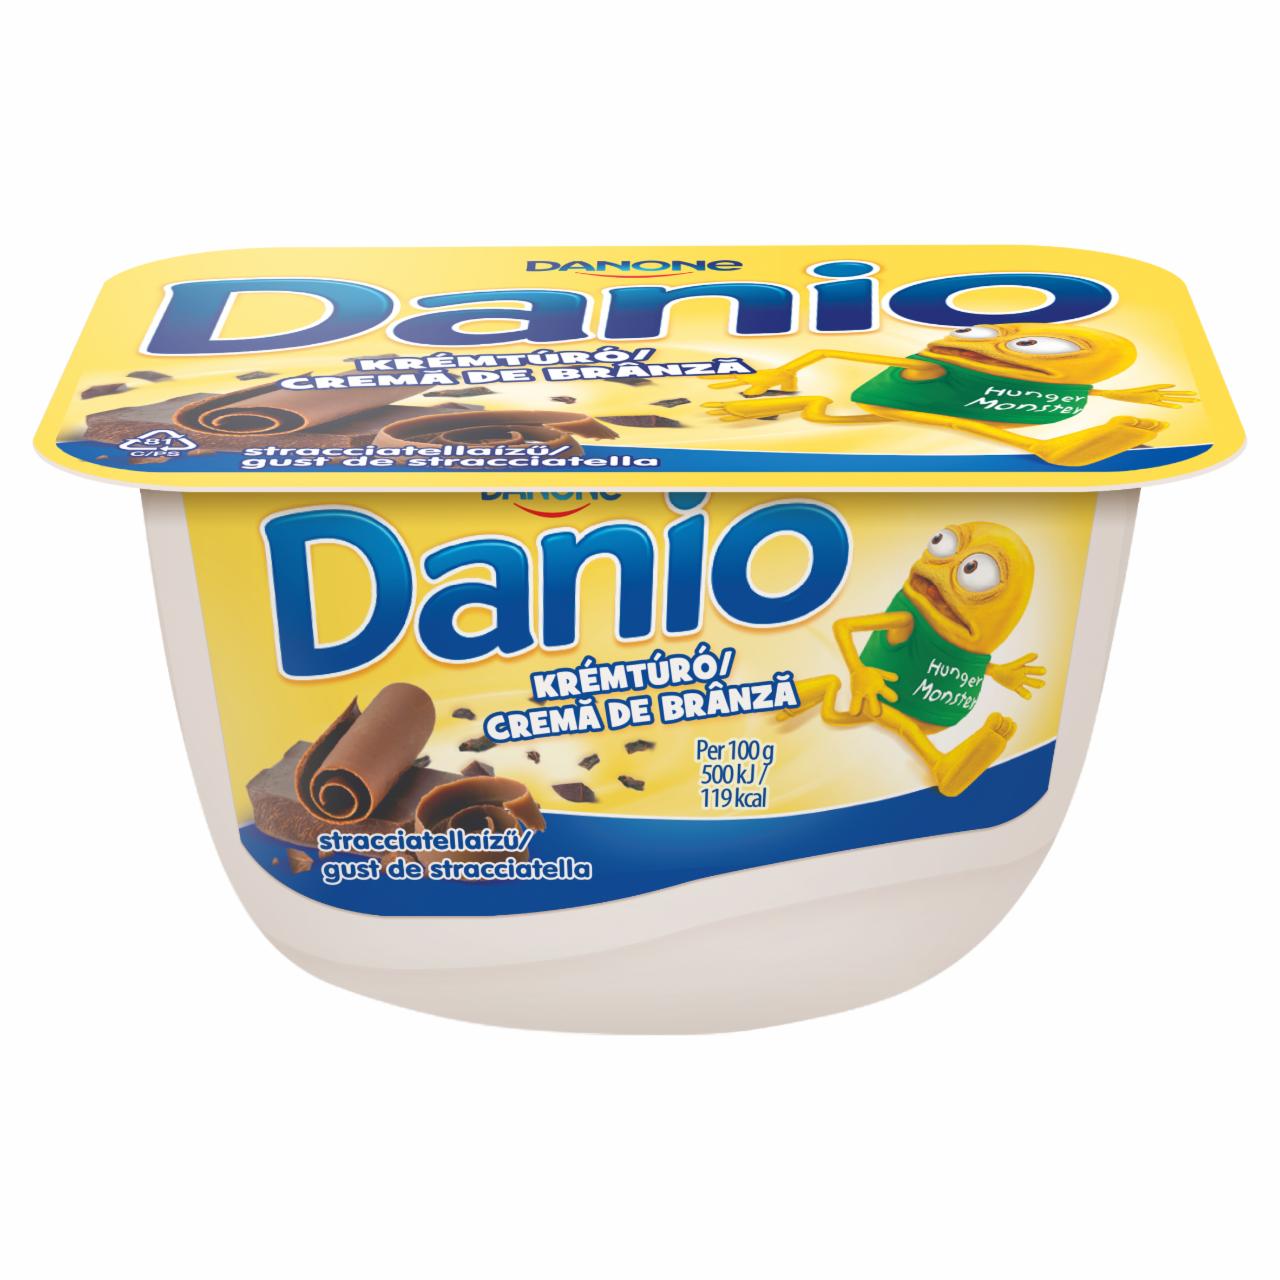 Képek - Danone Danio Stracciatella vaníliaízű krémtúró csokoládédarabokkal 130 g